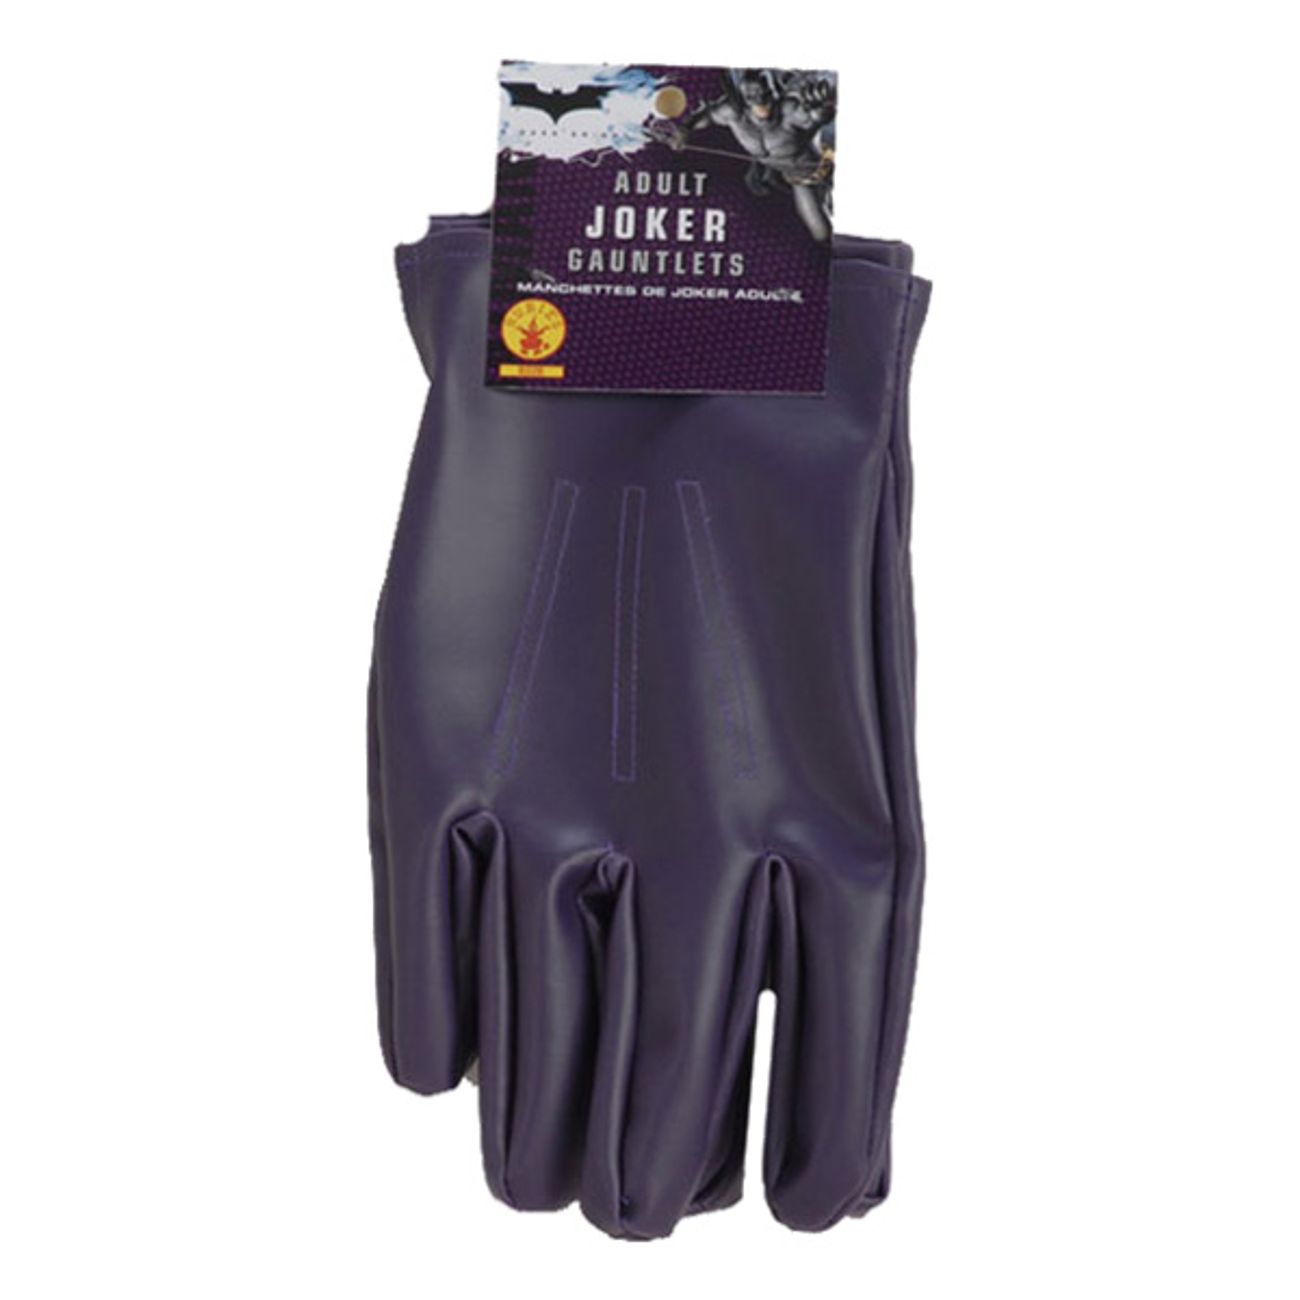 joker-handskar-1